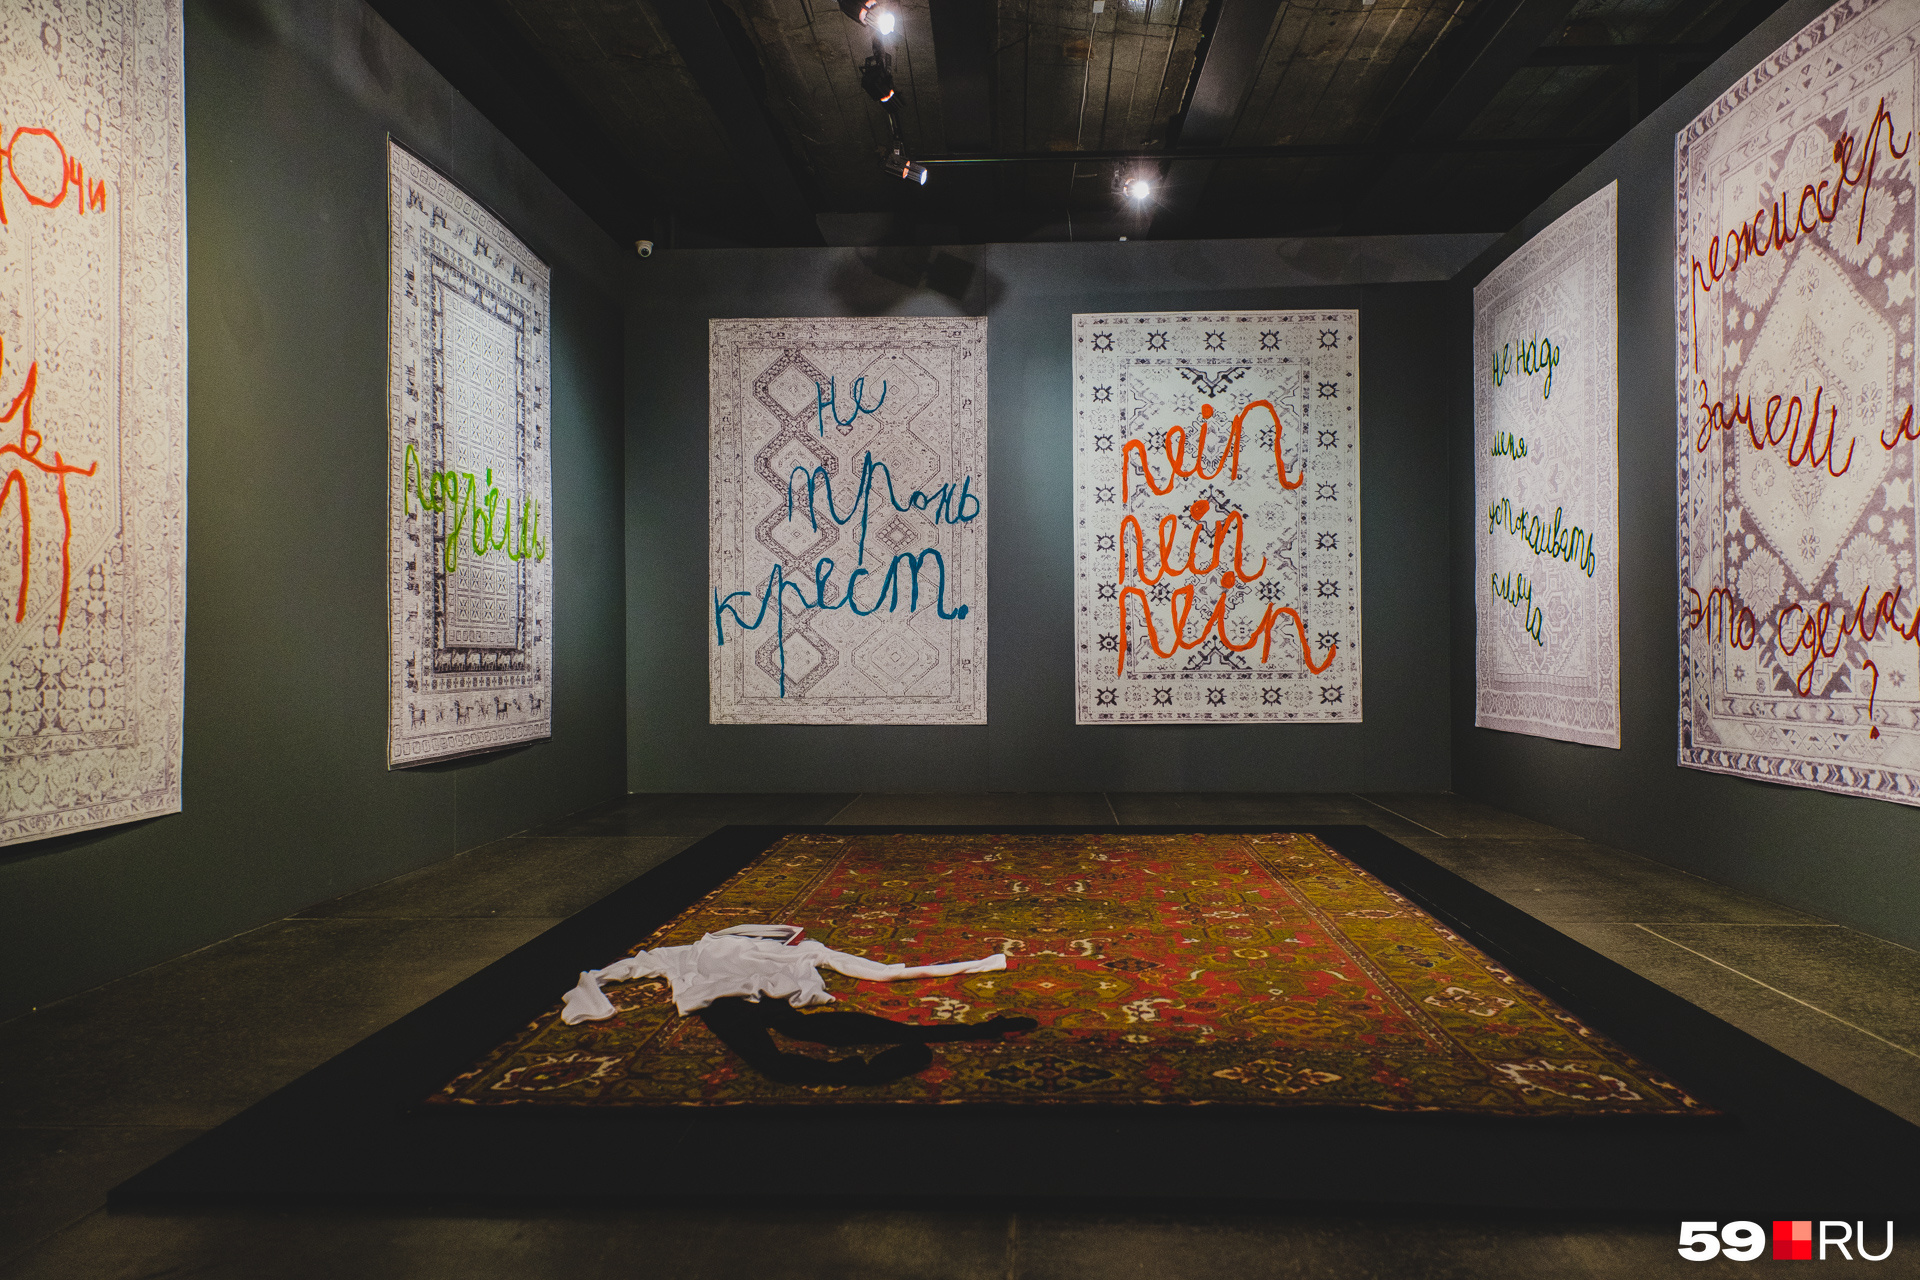 Инсталляция с обесцвеченными коврами и Энди Уорхолом на полу. Цветной ковер — это его «дом» по замыслу ребенка